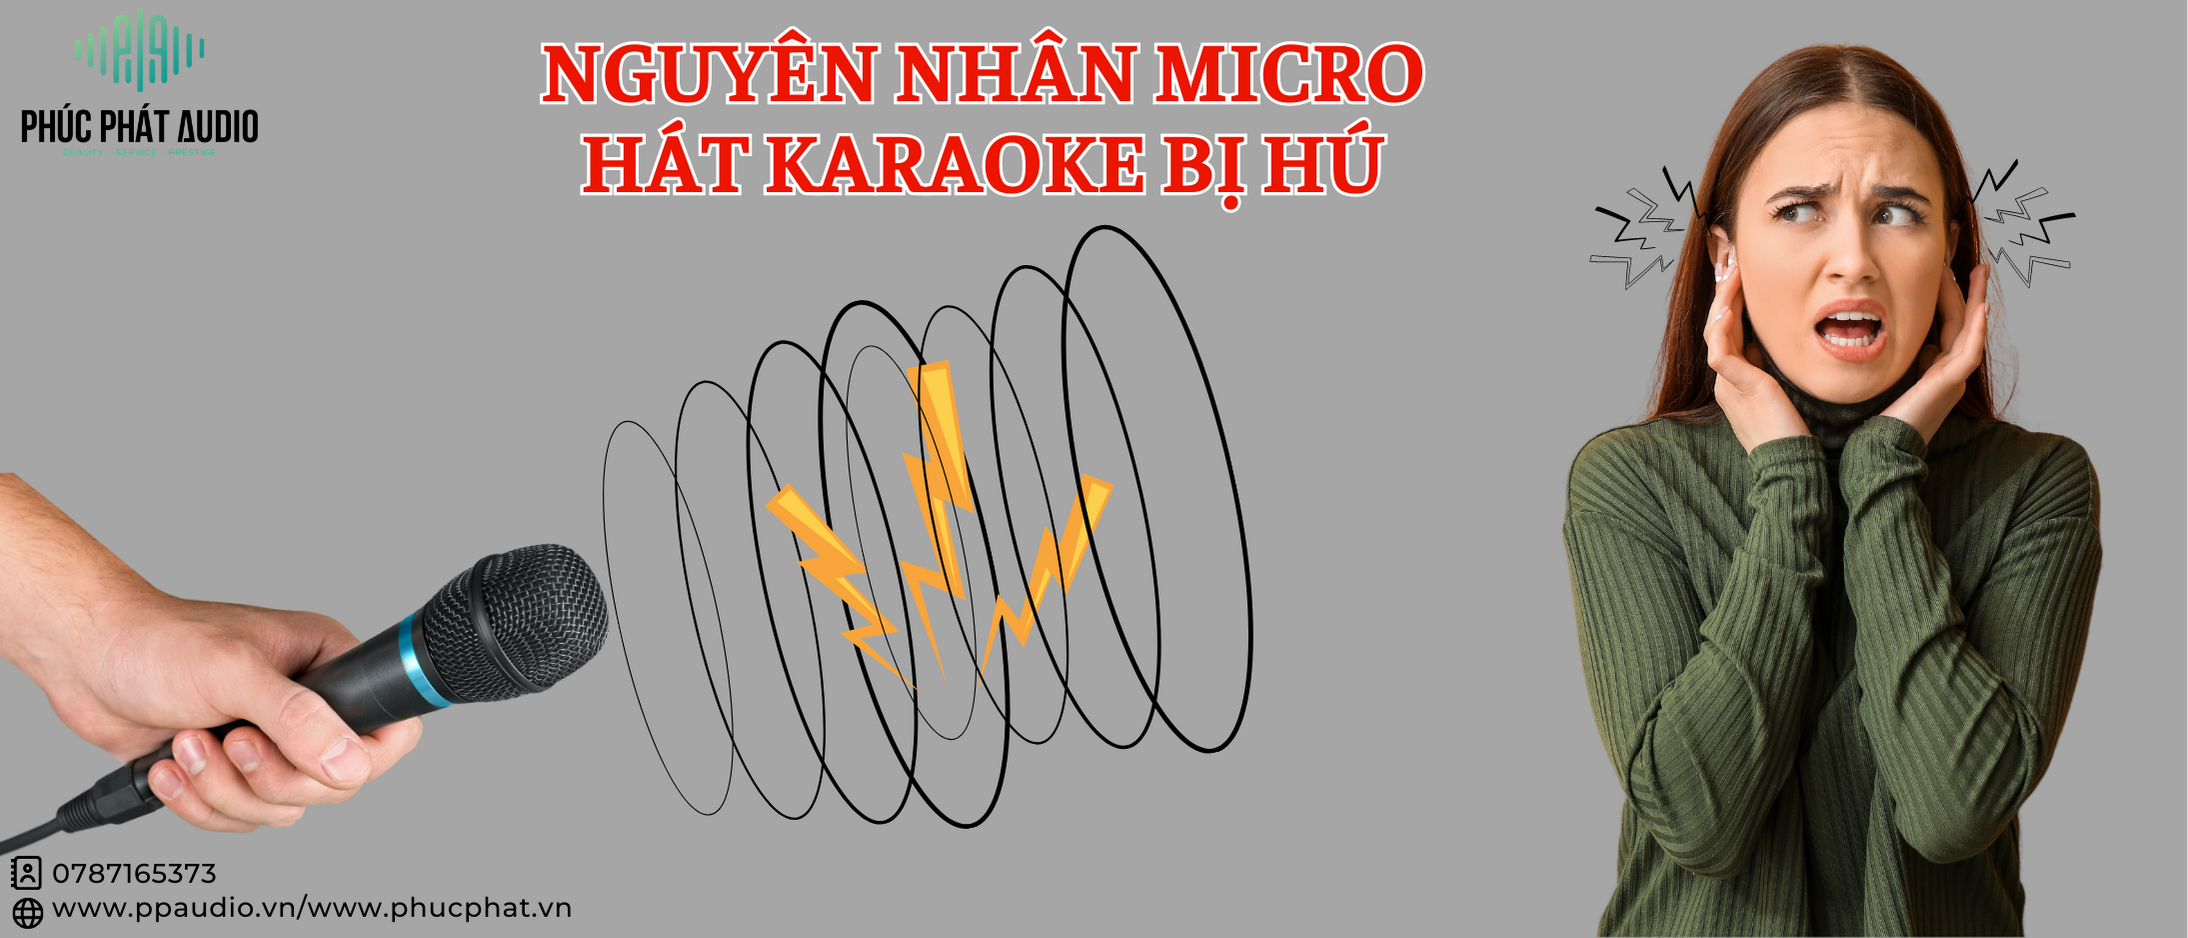 Tại Sao Micro Hát Karaoke Bị Hú? Cách Khắc Phục Nhanh 